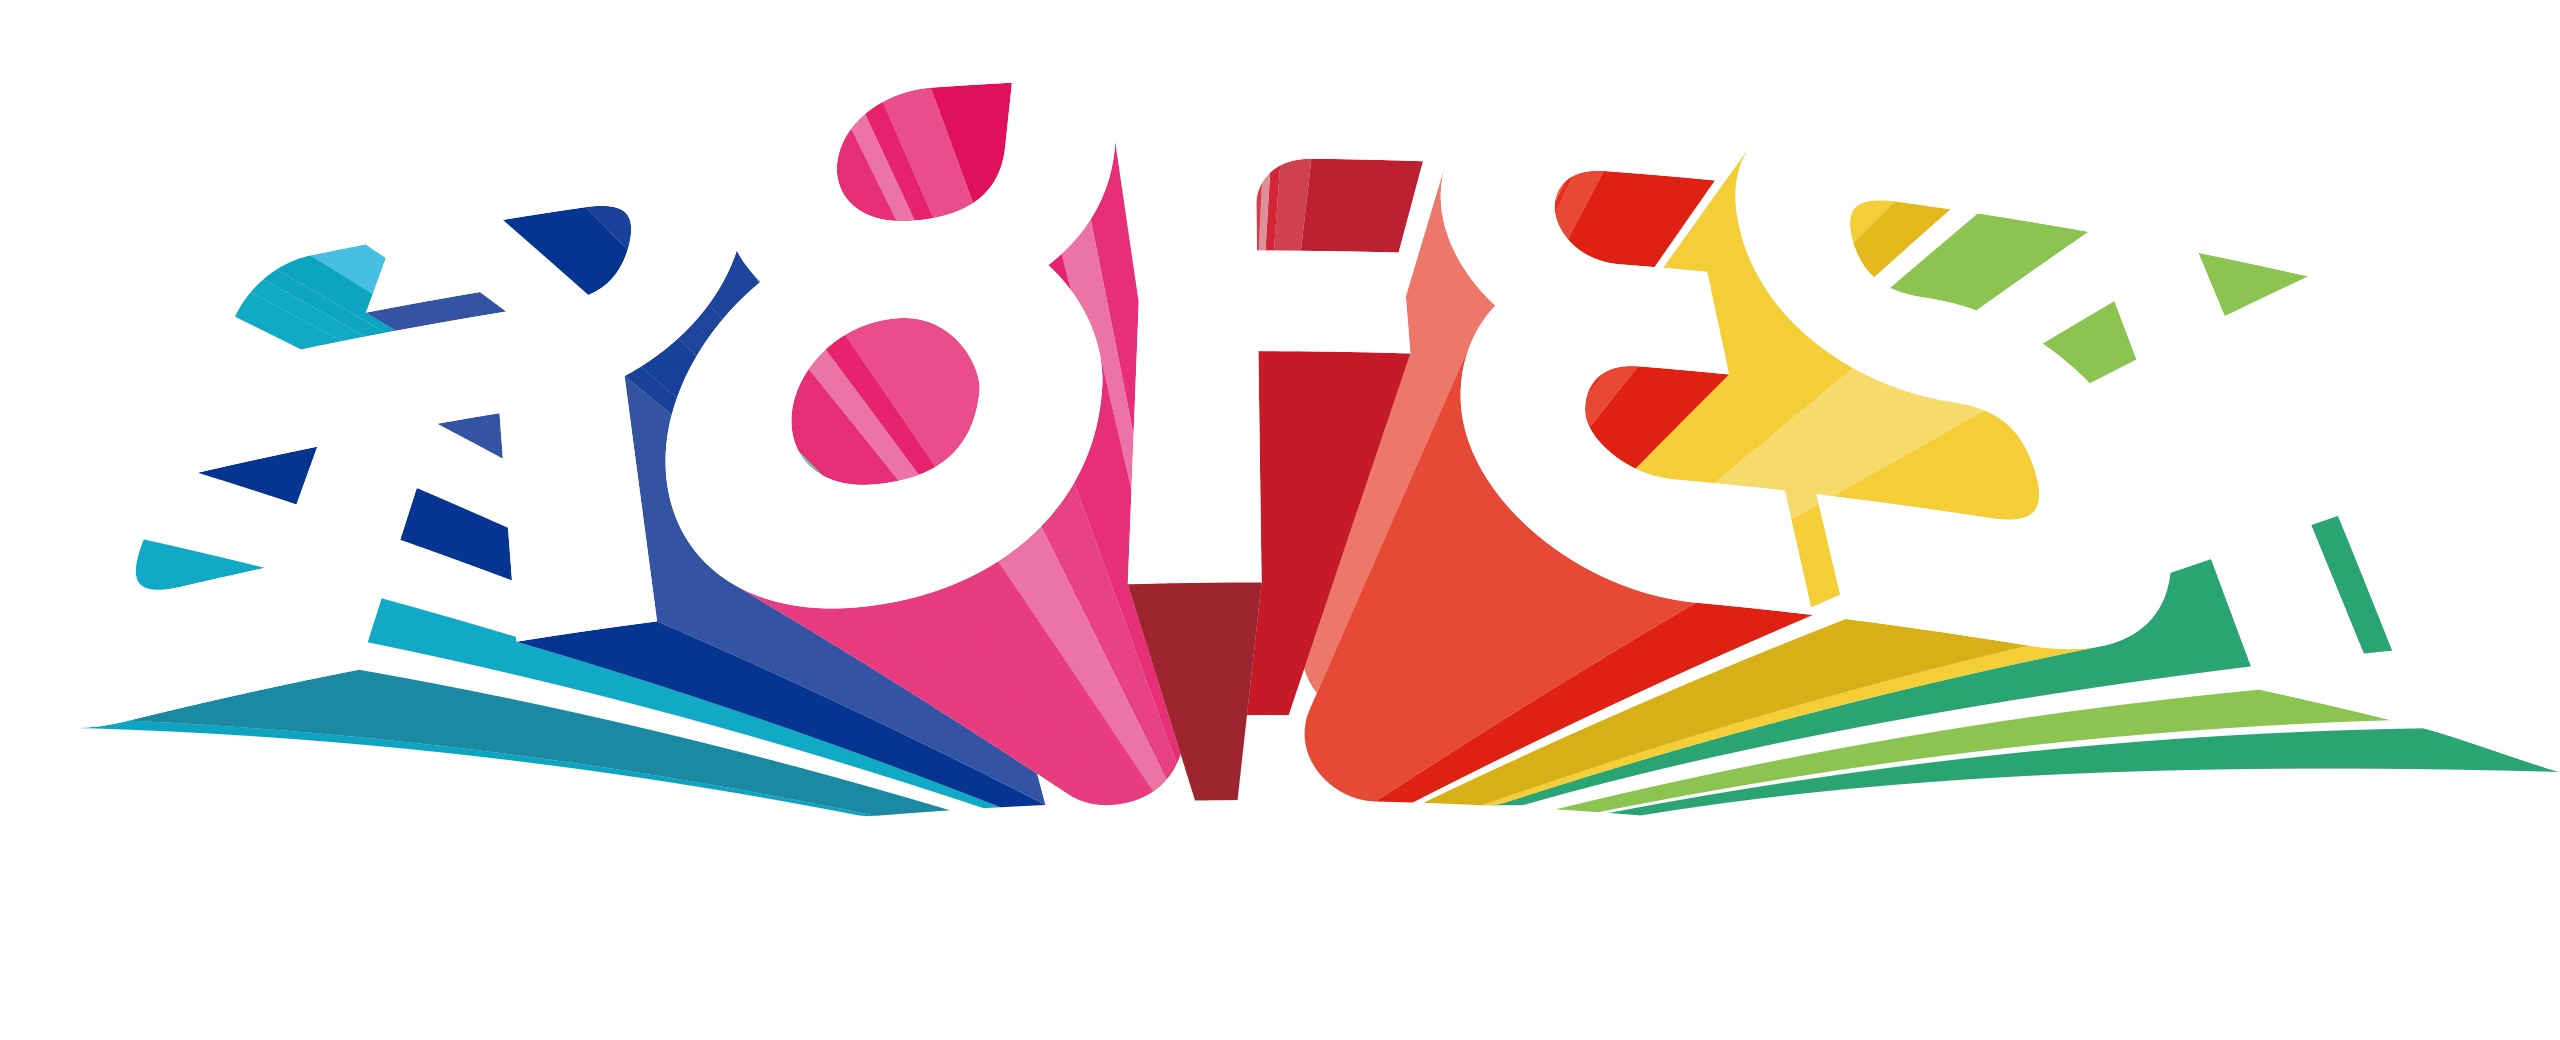 GR8 FEST. AT OSAKA-JO HALL AT OSAKA-JO HALL